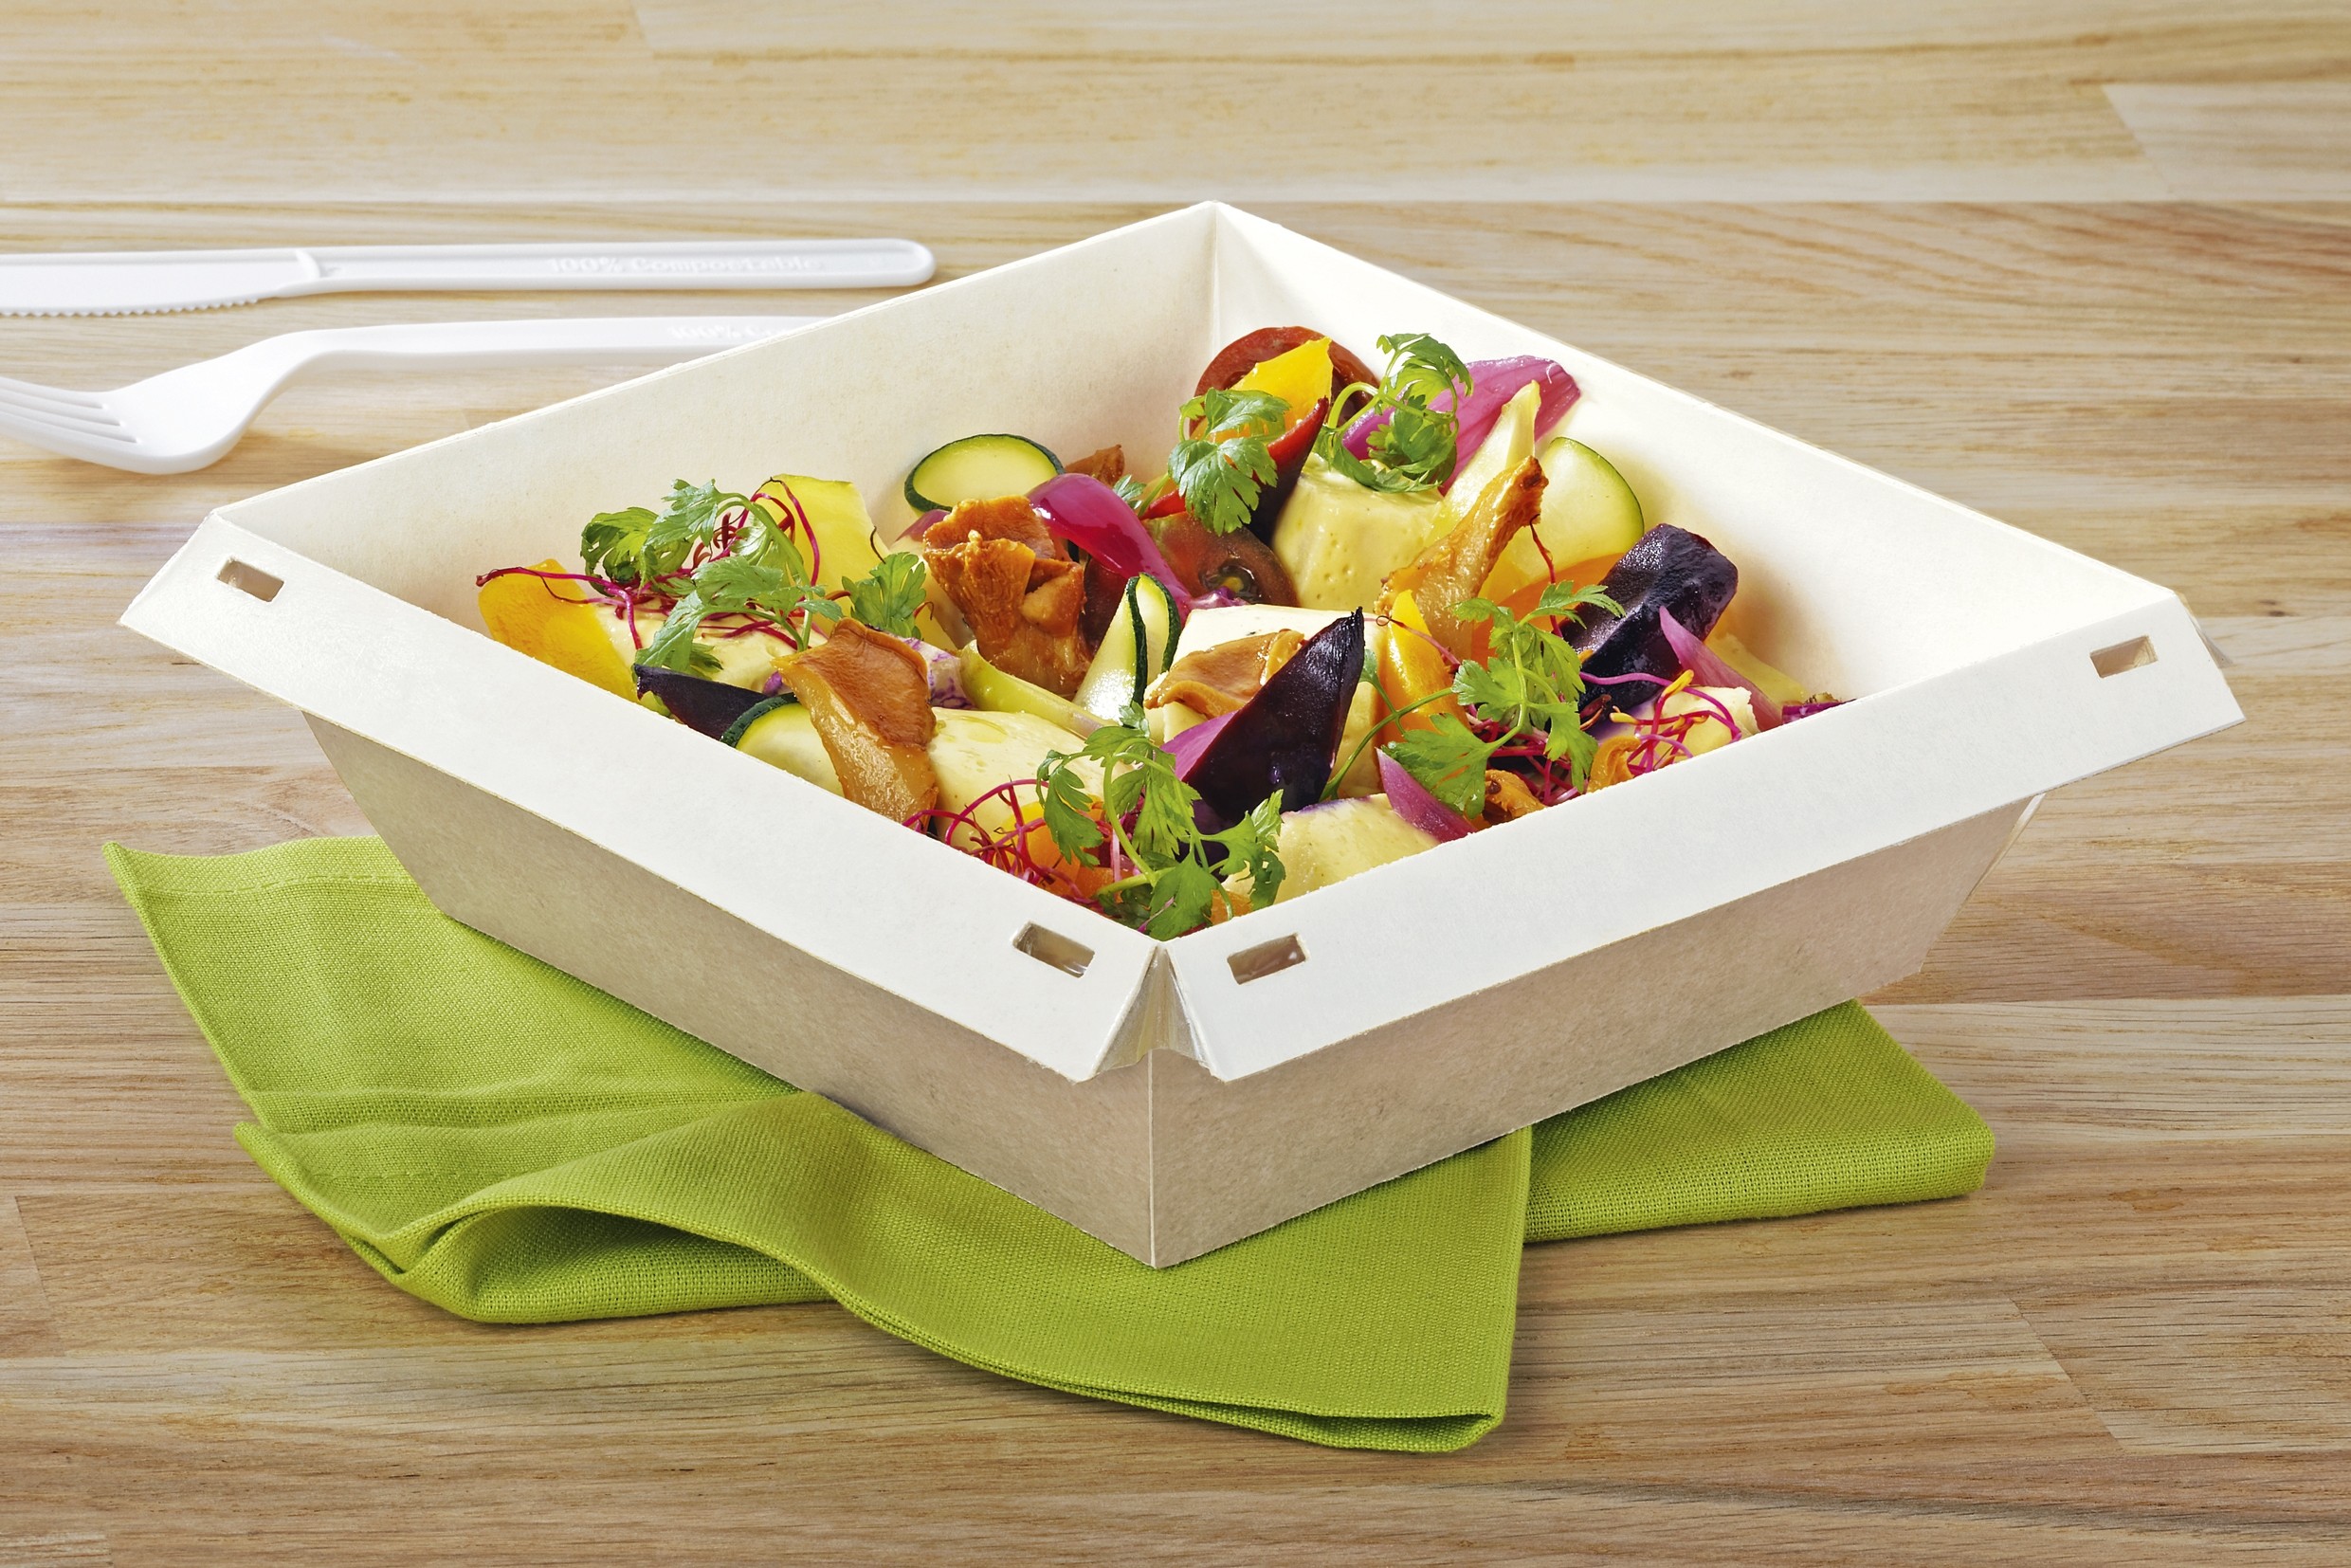 Boîte pour plats chauds jetable biodégradable à emporter compostable